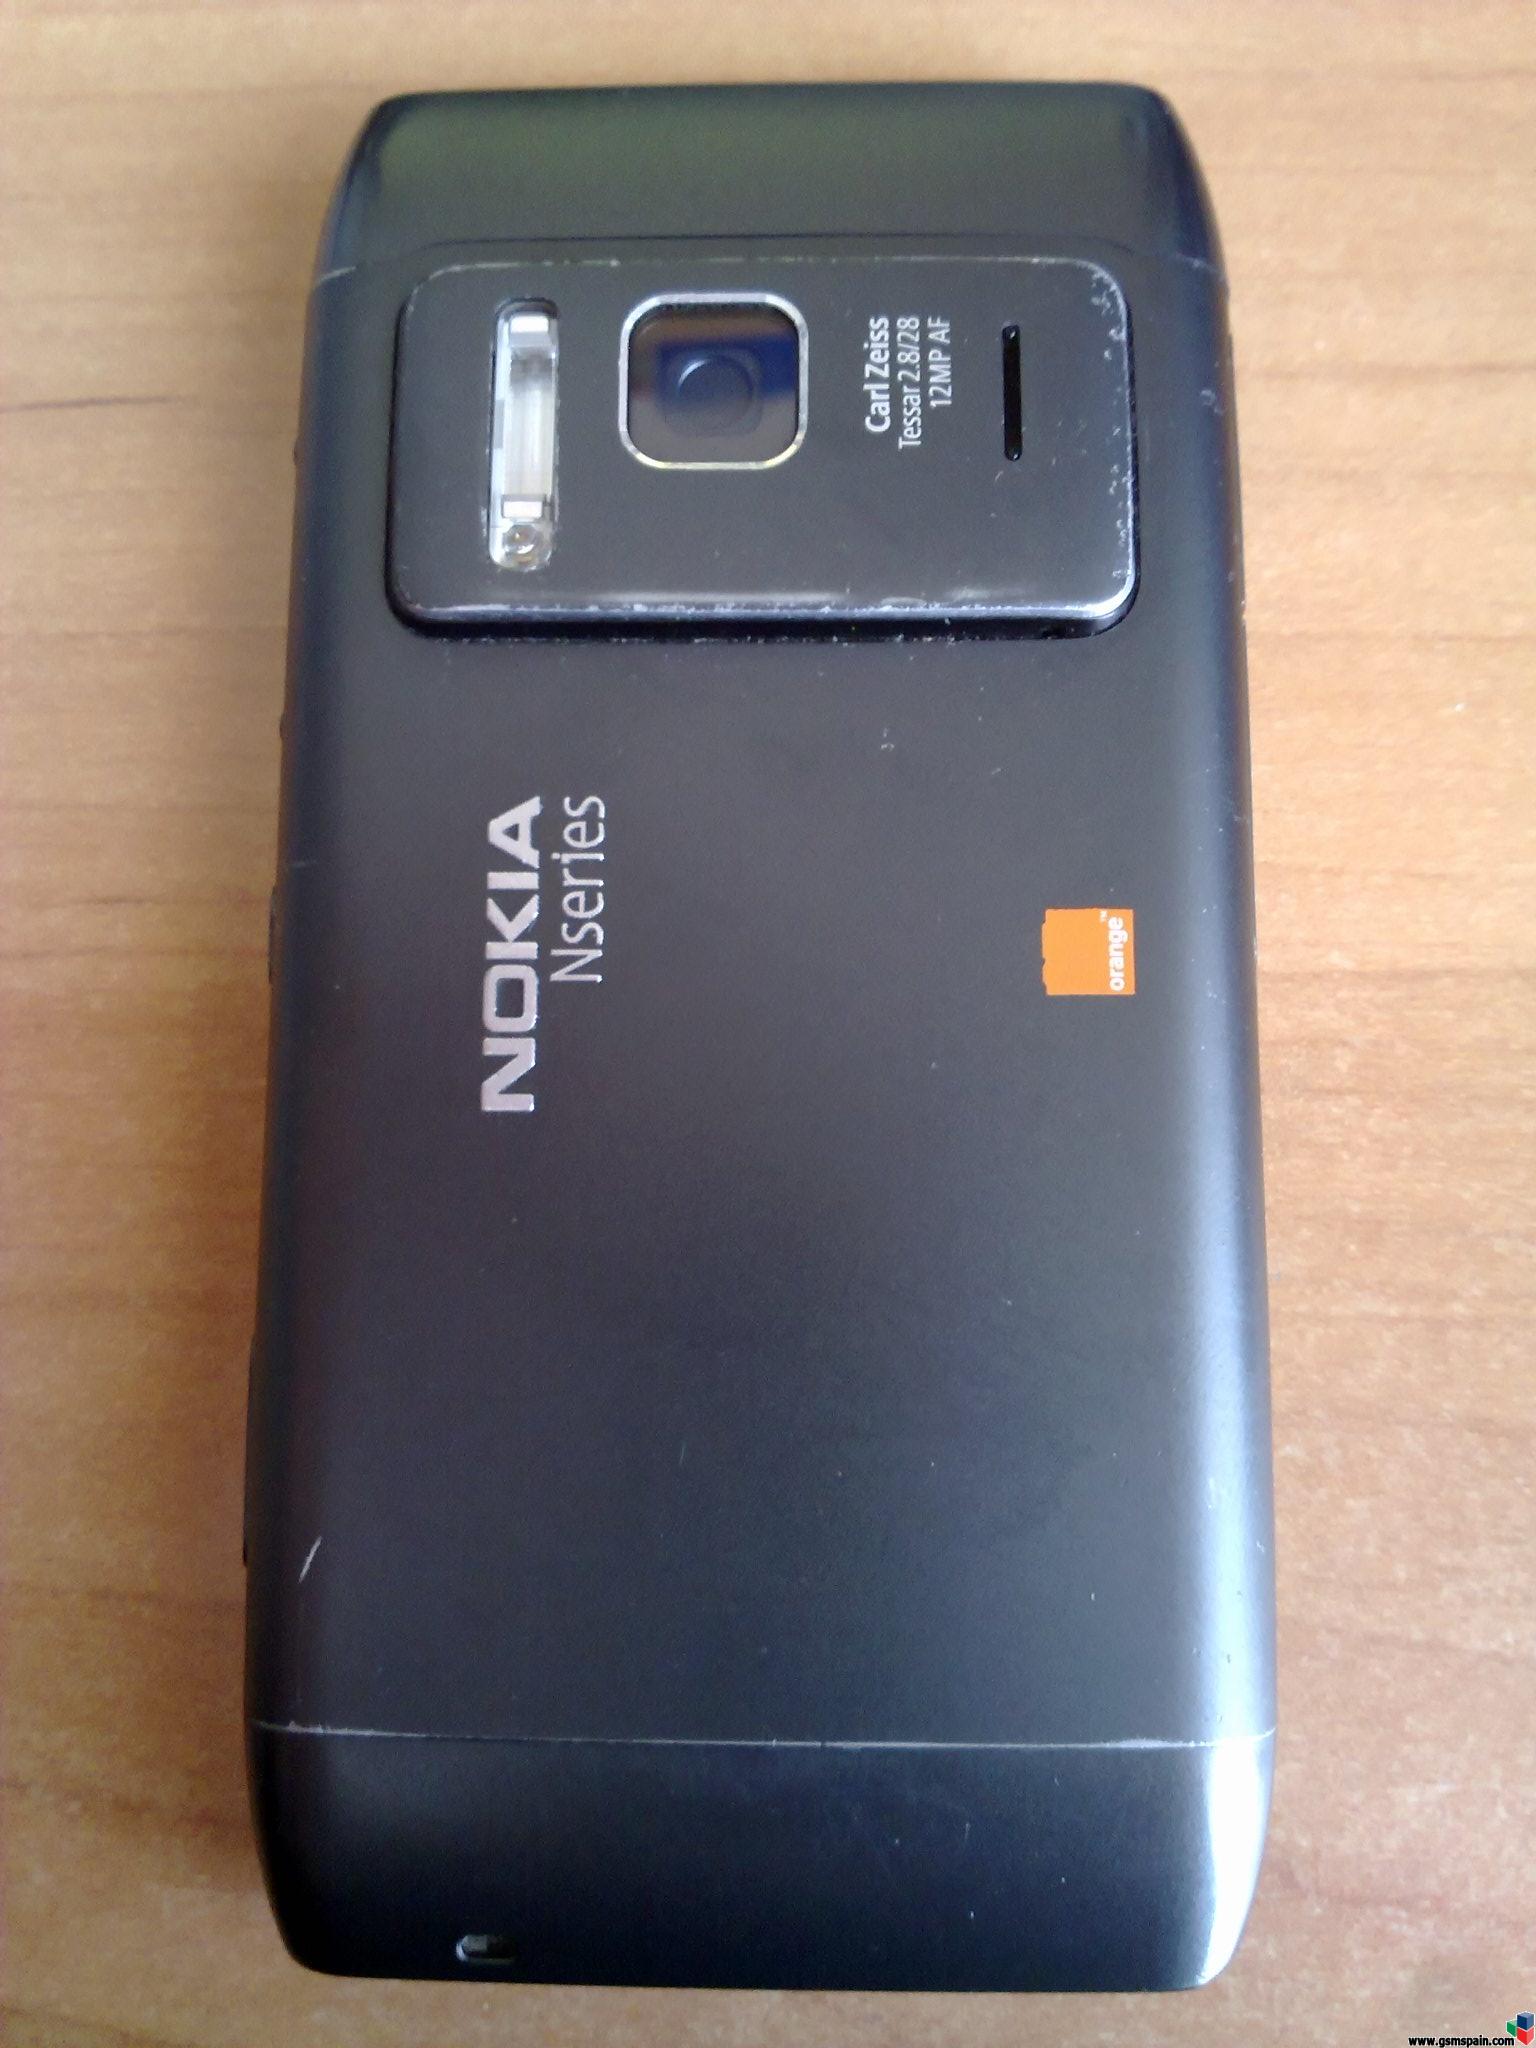 [VENDO] Nokia N8, usado, de Orange, 150 envio incluido